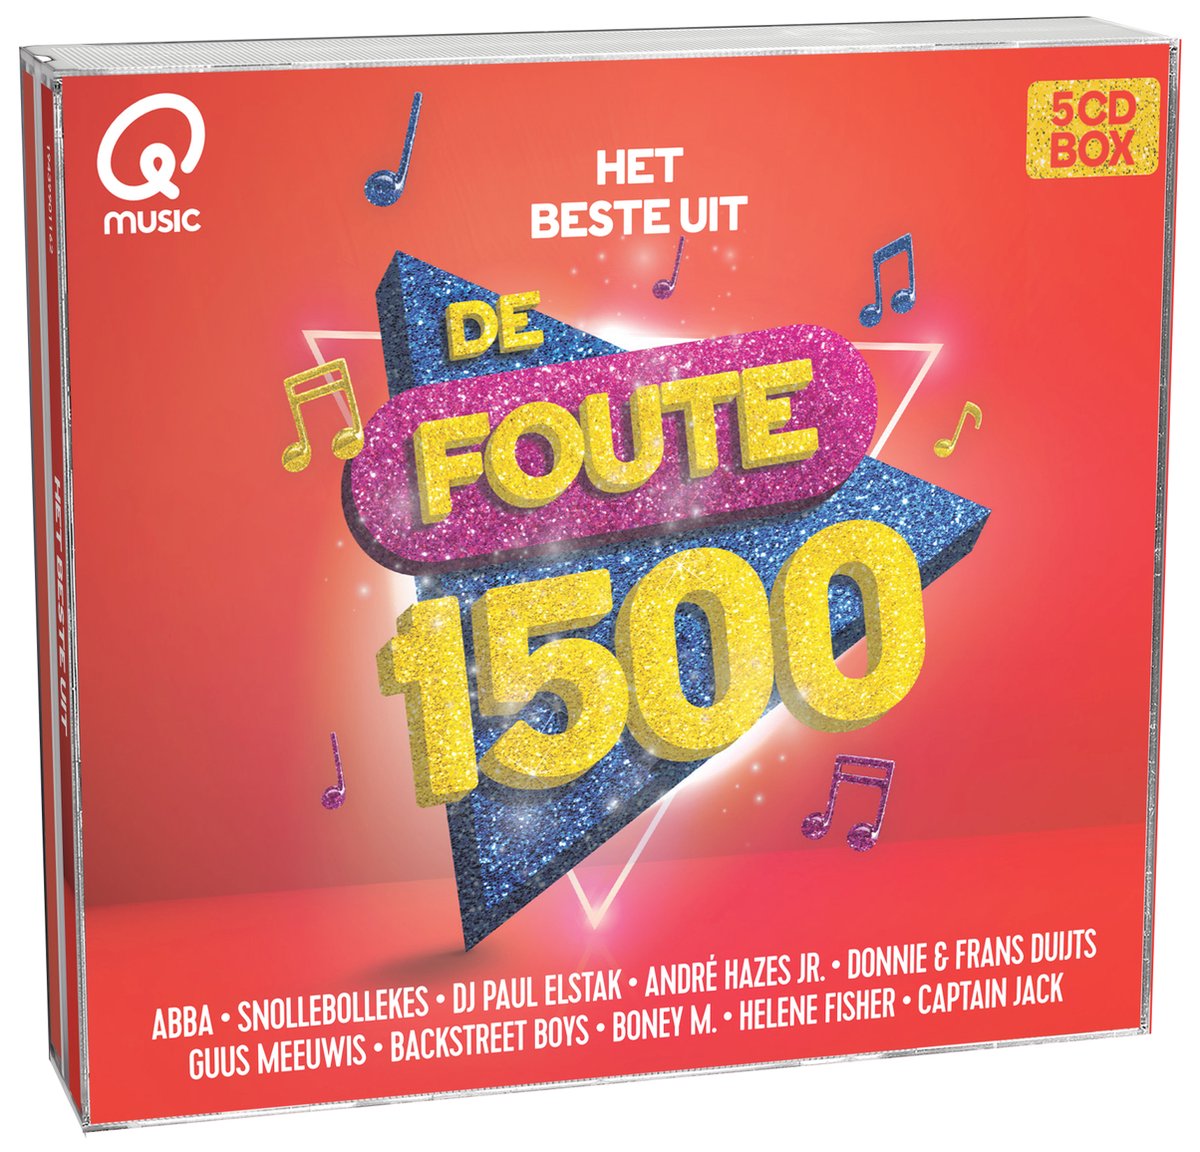 Qmusic: Het Beste Uit De Foute 1500 - various artists